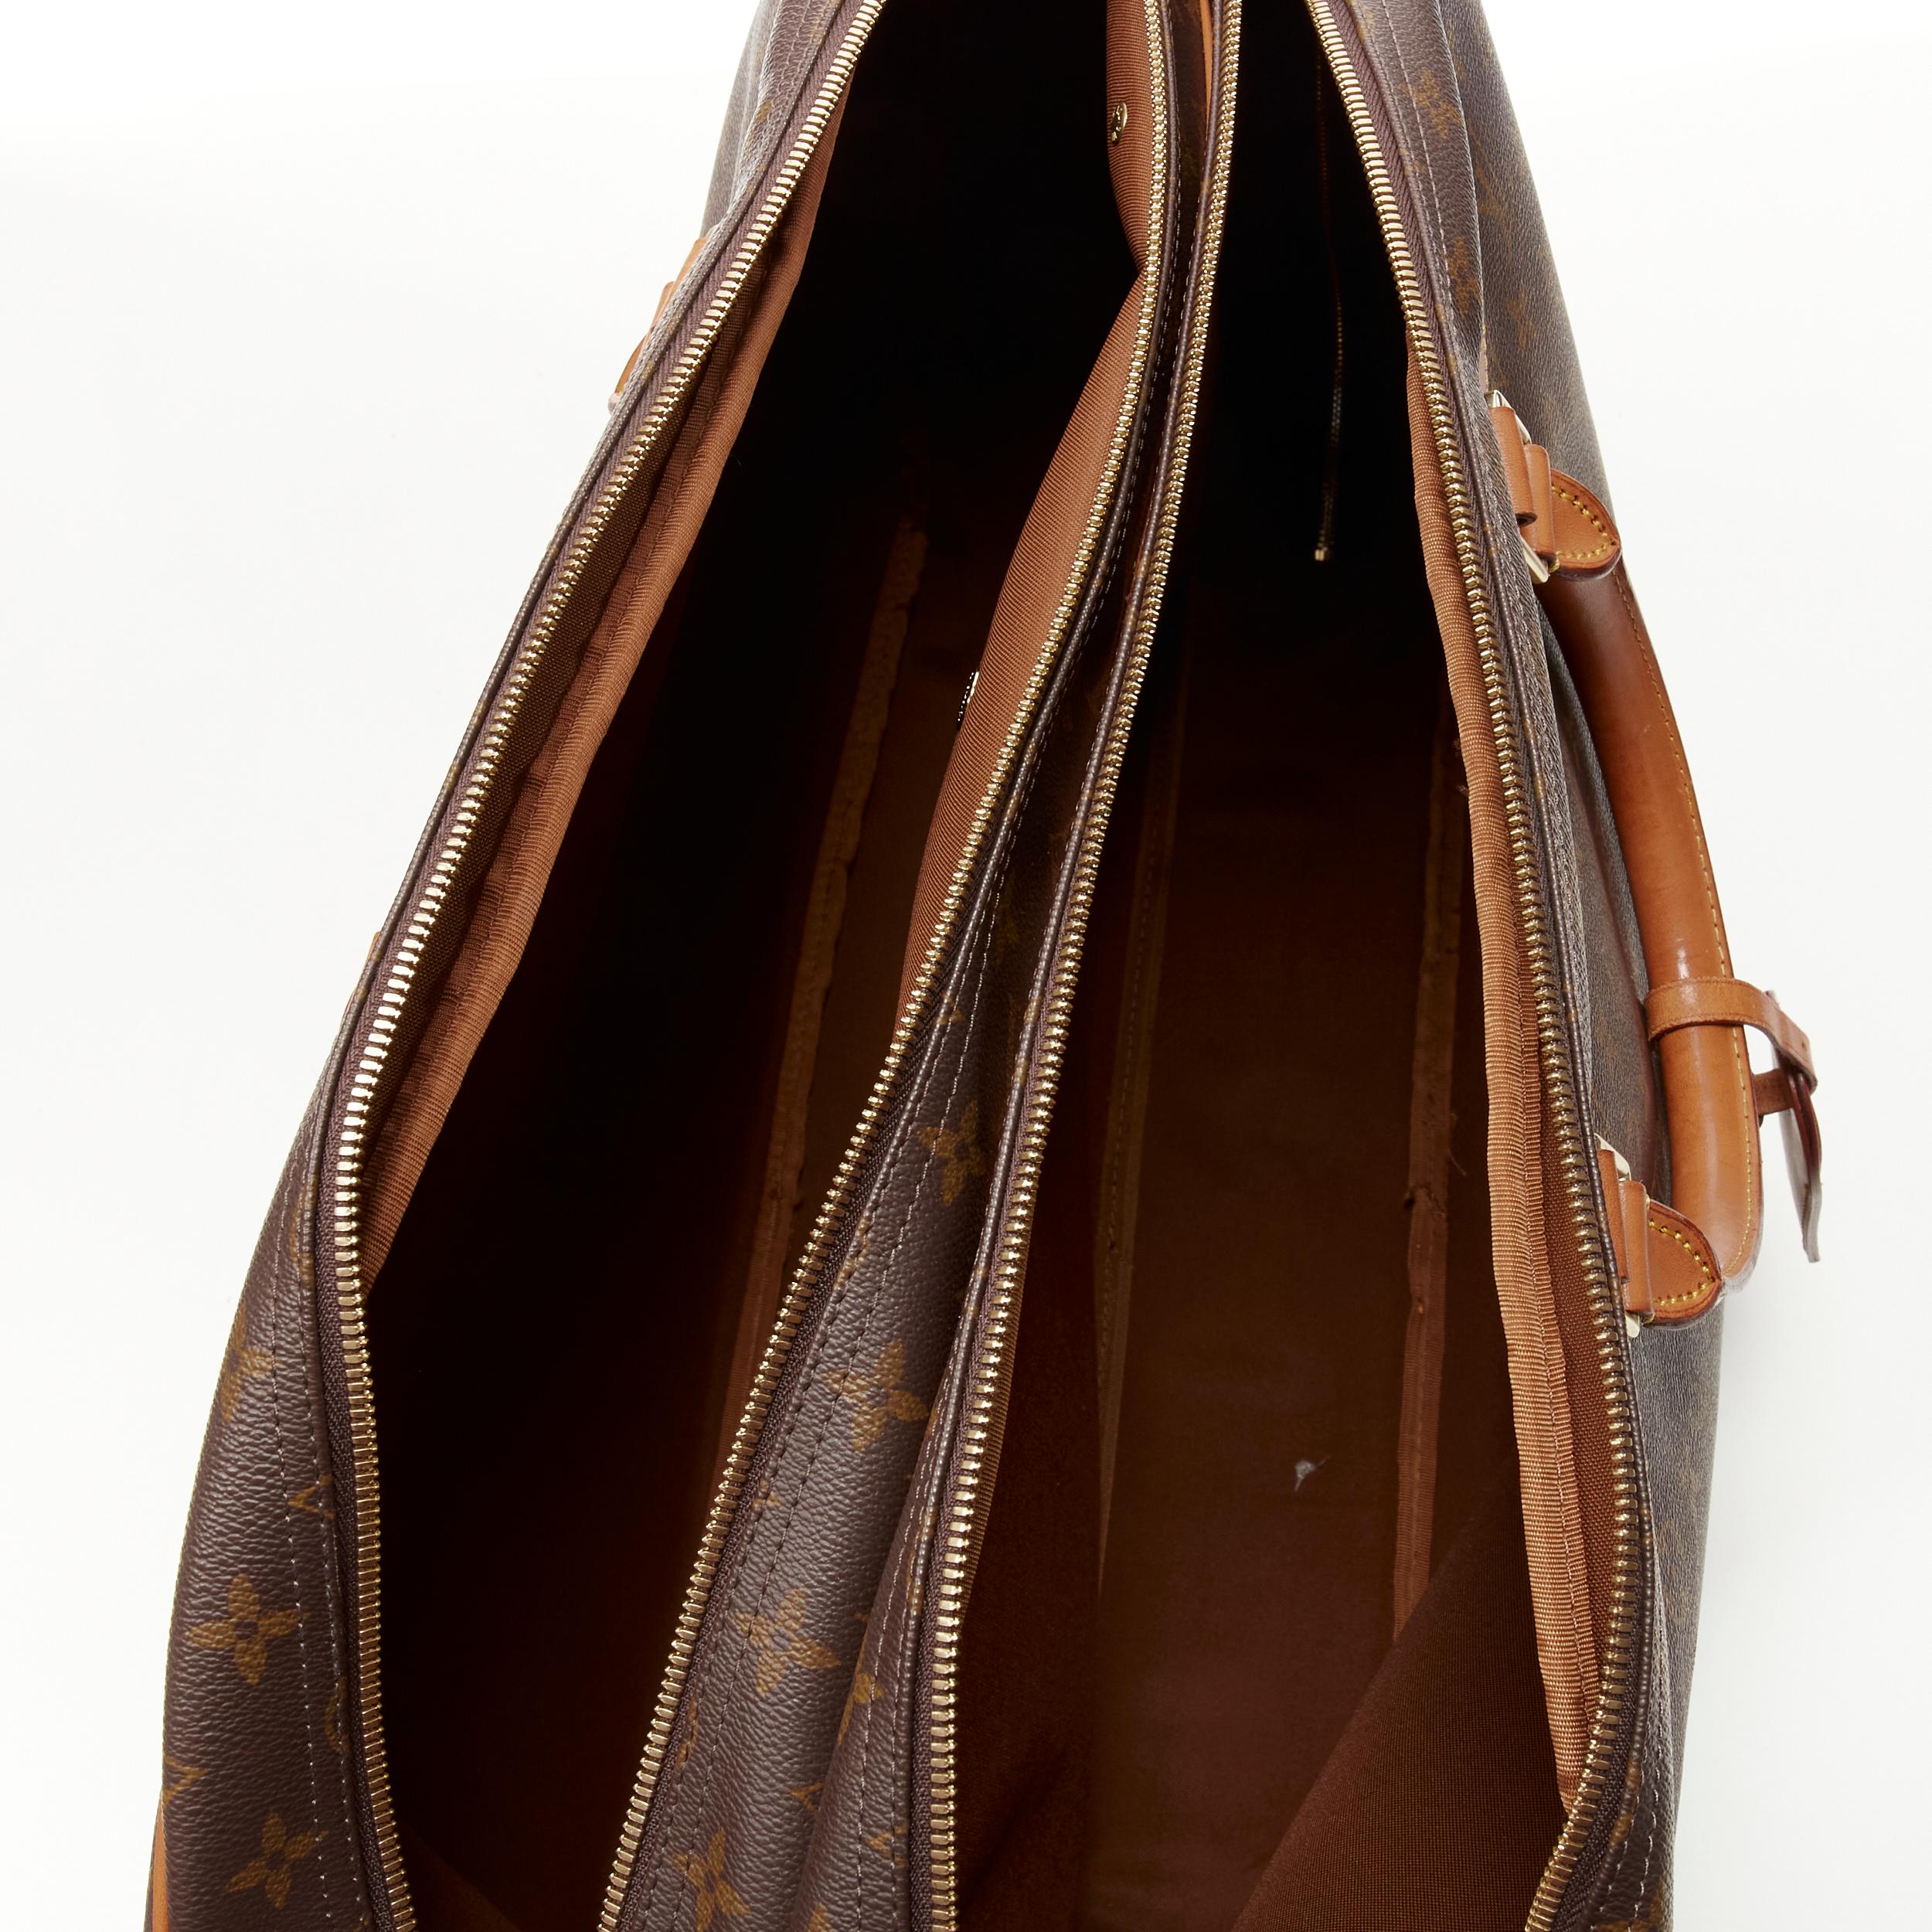 LOUIS VUITTON VIntage Alize brown monogram leather trim 2 compartment bag 1